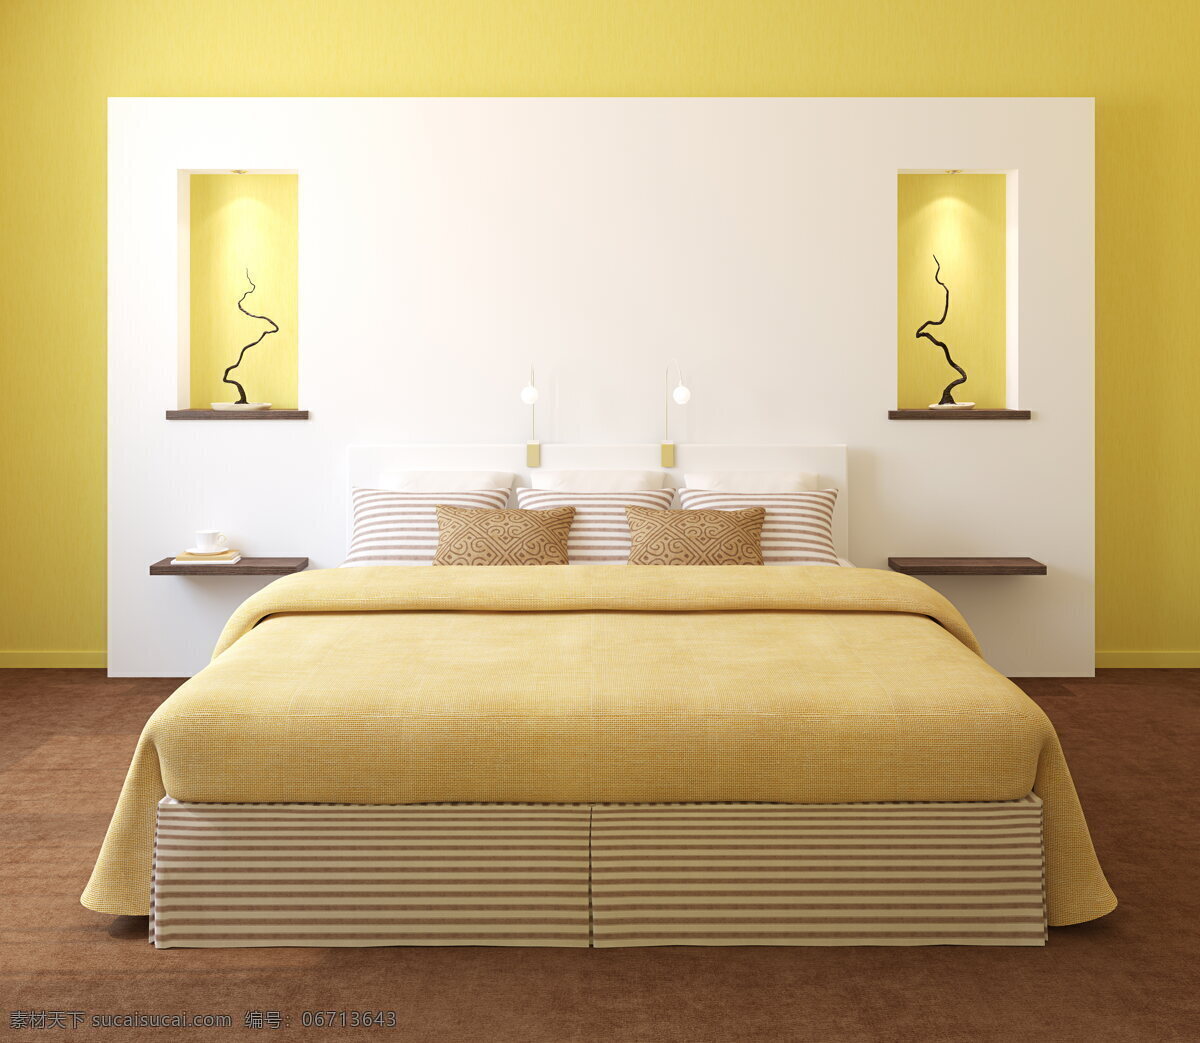 家居卧室 卧室 双人床 壁灯 灯具 床铺 枕头 被子 床单 被单 地板 淡雅 木纹 黄色 墙壁 白色 装饰 工艺品 室内 家具 家装 装修 组 装潢 环境设计 室内设计